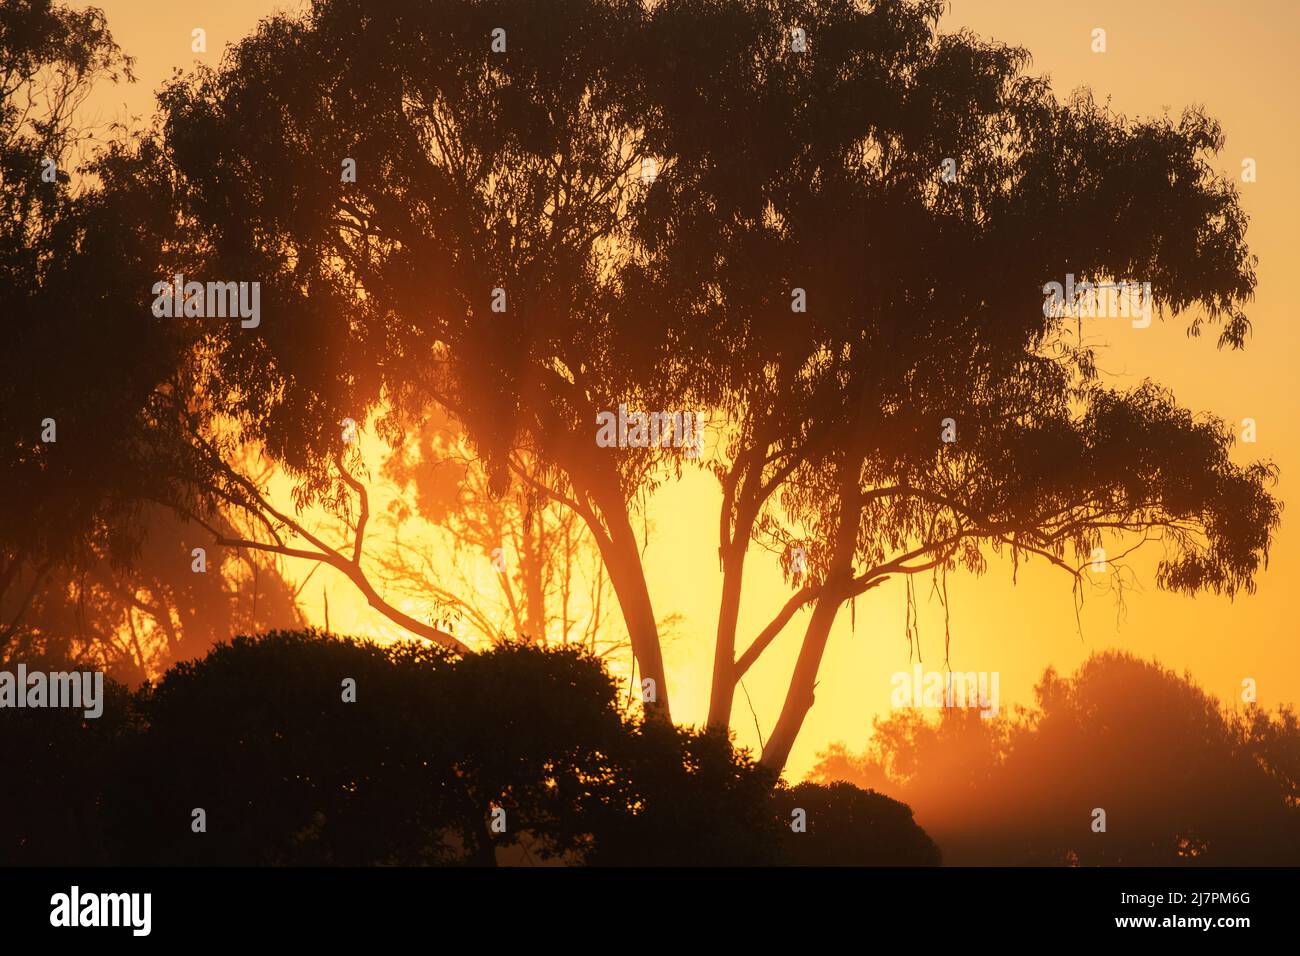 Malerischer Sonnenuntergang Im Kalifornischen Woodland. Landschaftlich warmes Sonnenlicht, das durch die Äste kommt. Stockfoto